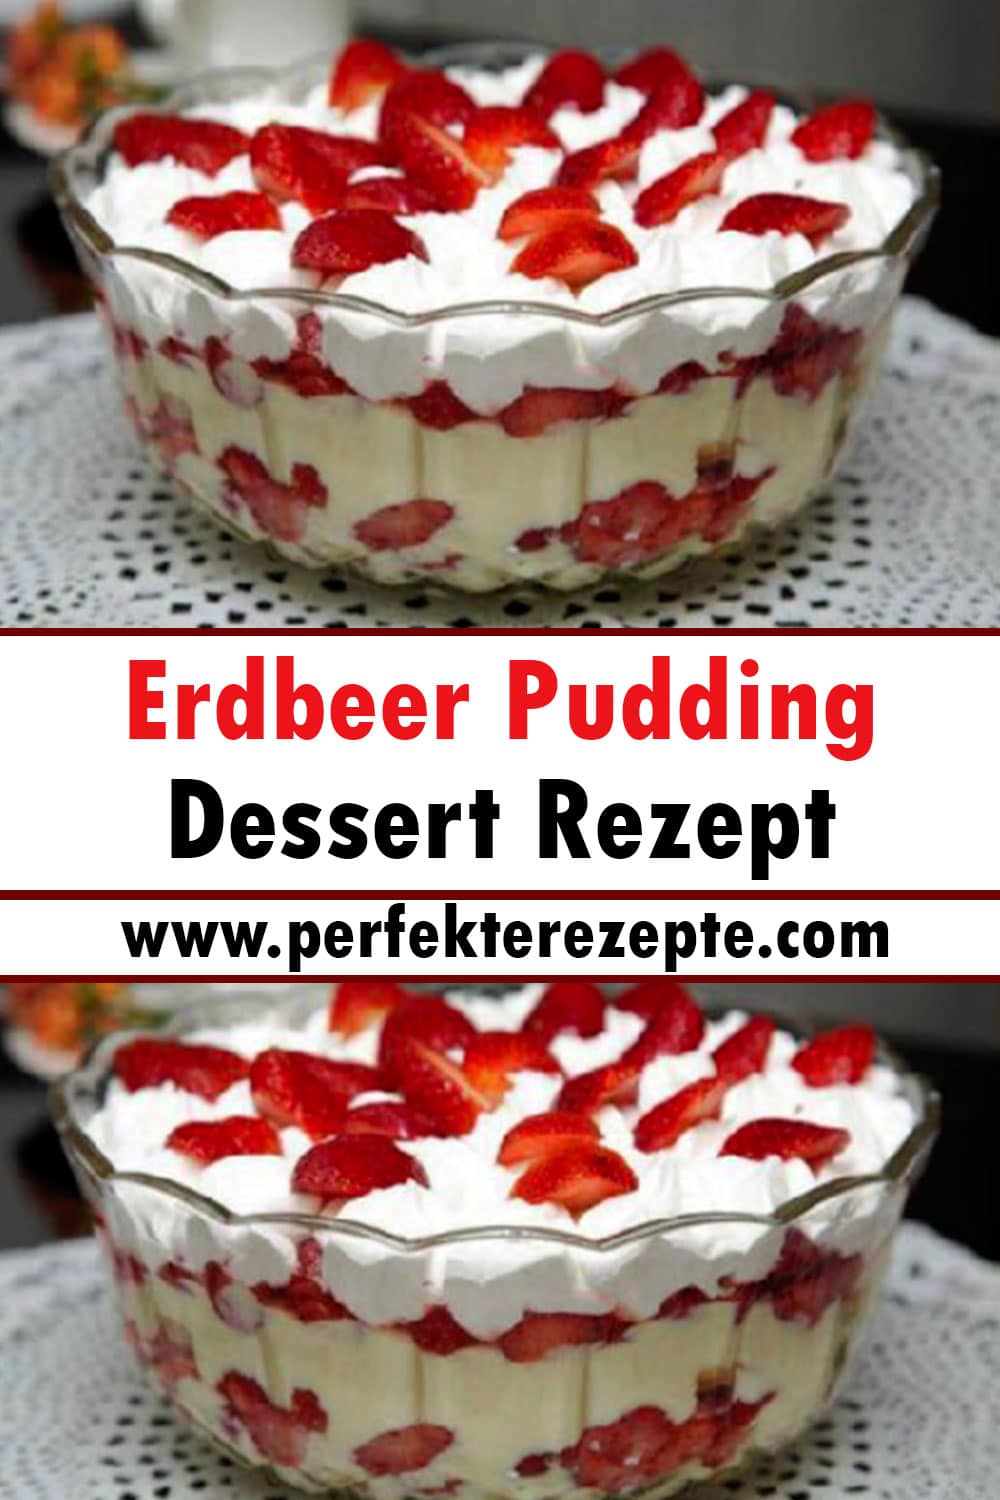 Erdbeer Pudding Dessert Rezept